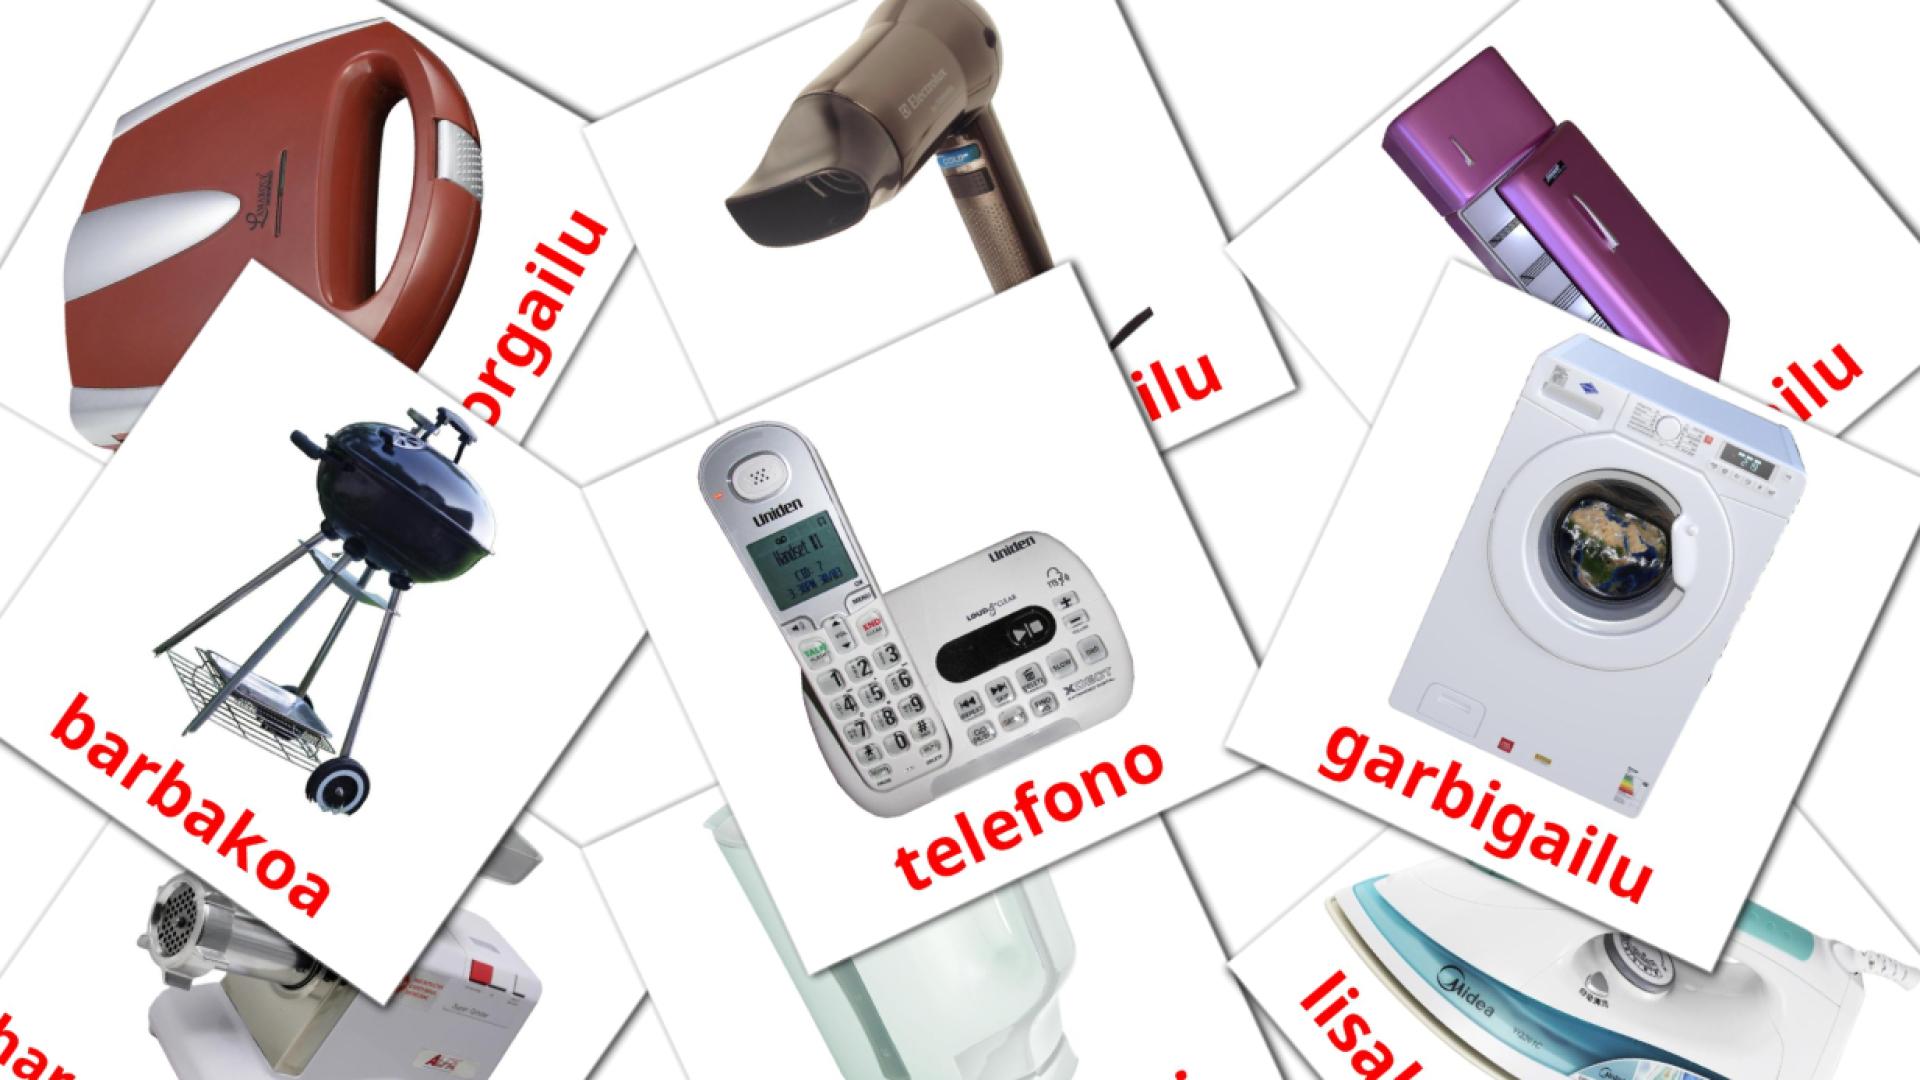 Electronics - basque vocabulary cards